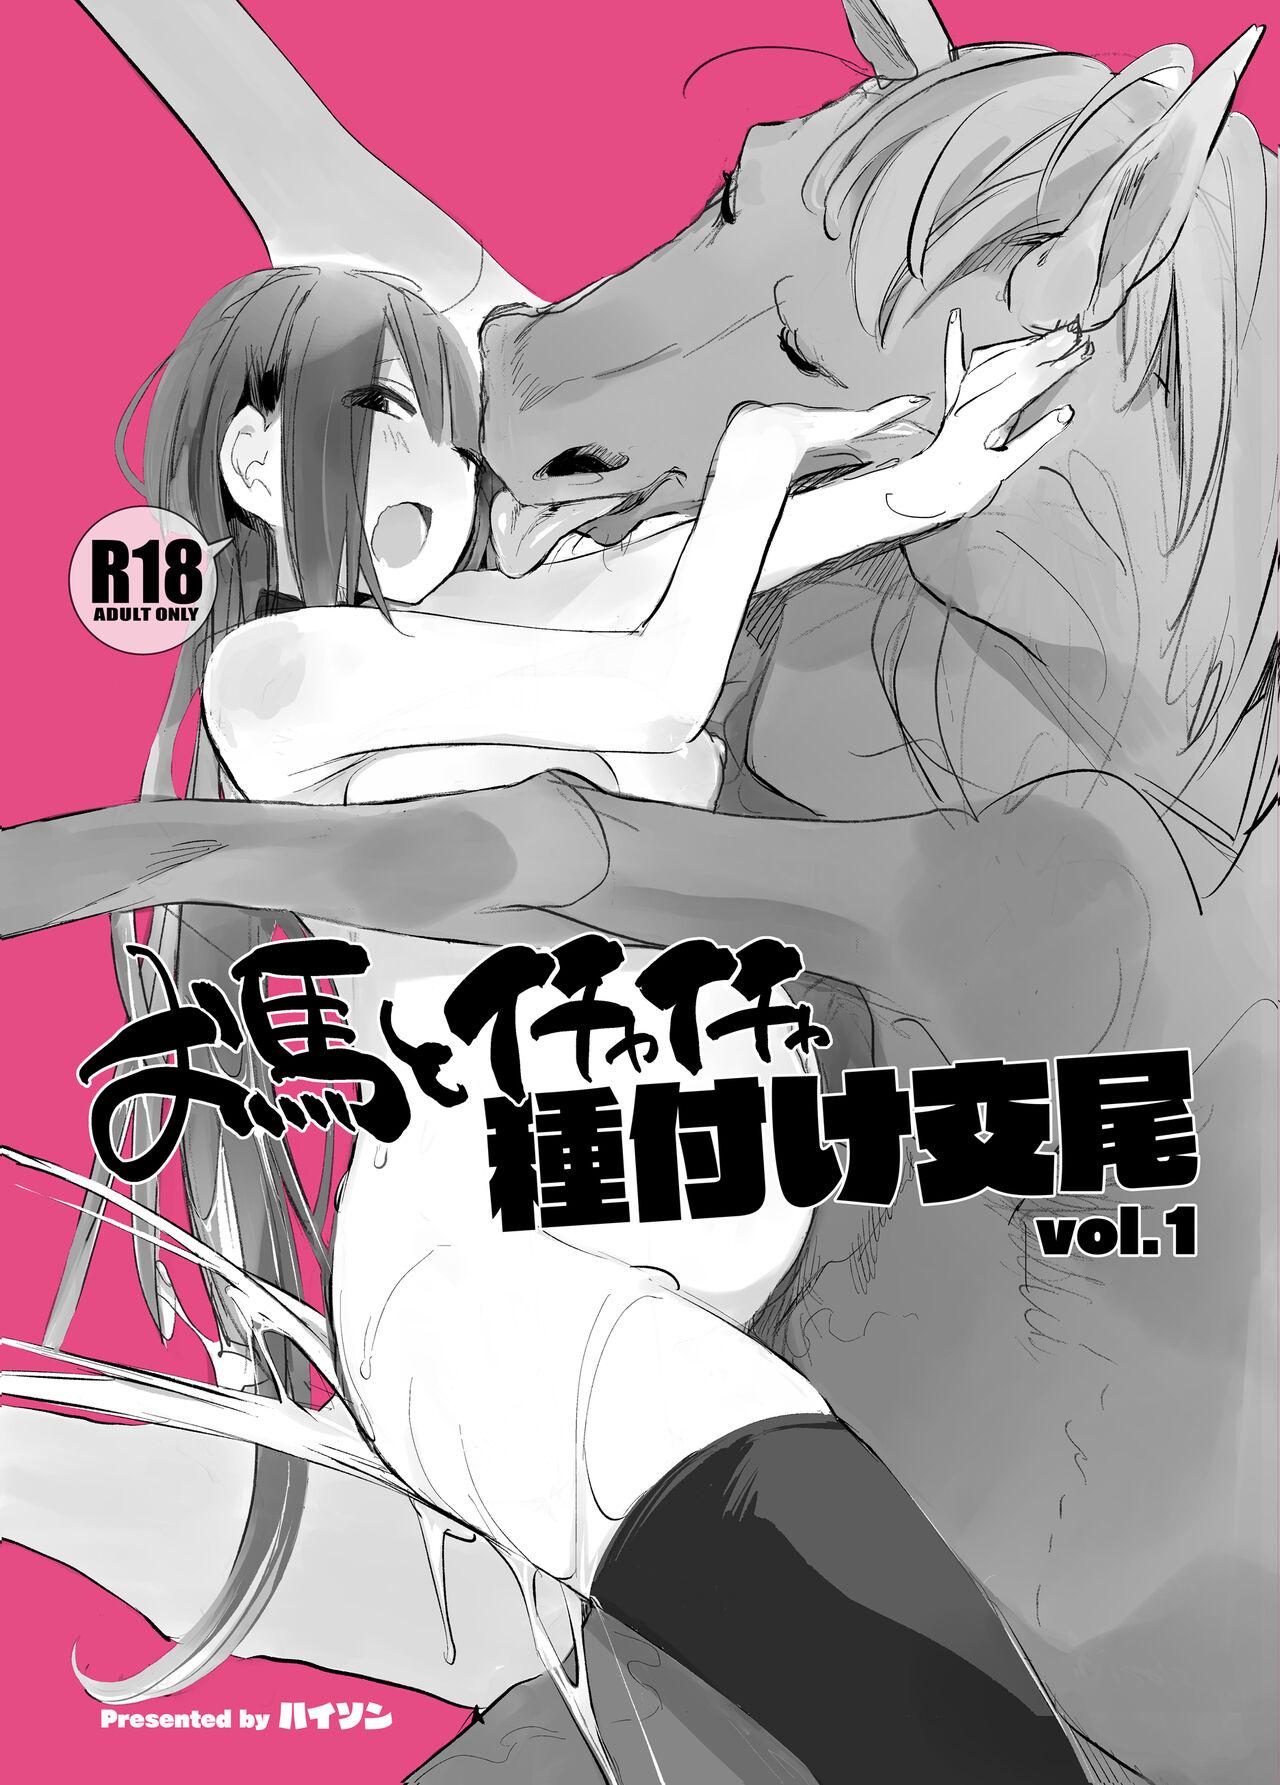 Sem Camisinha お馬とイチャイチャ種付け交尾 vol.1 - Original Erotic - Picture 1